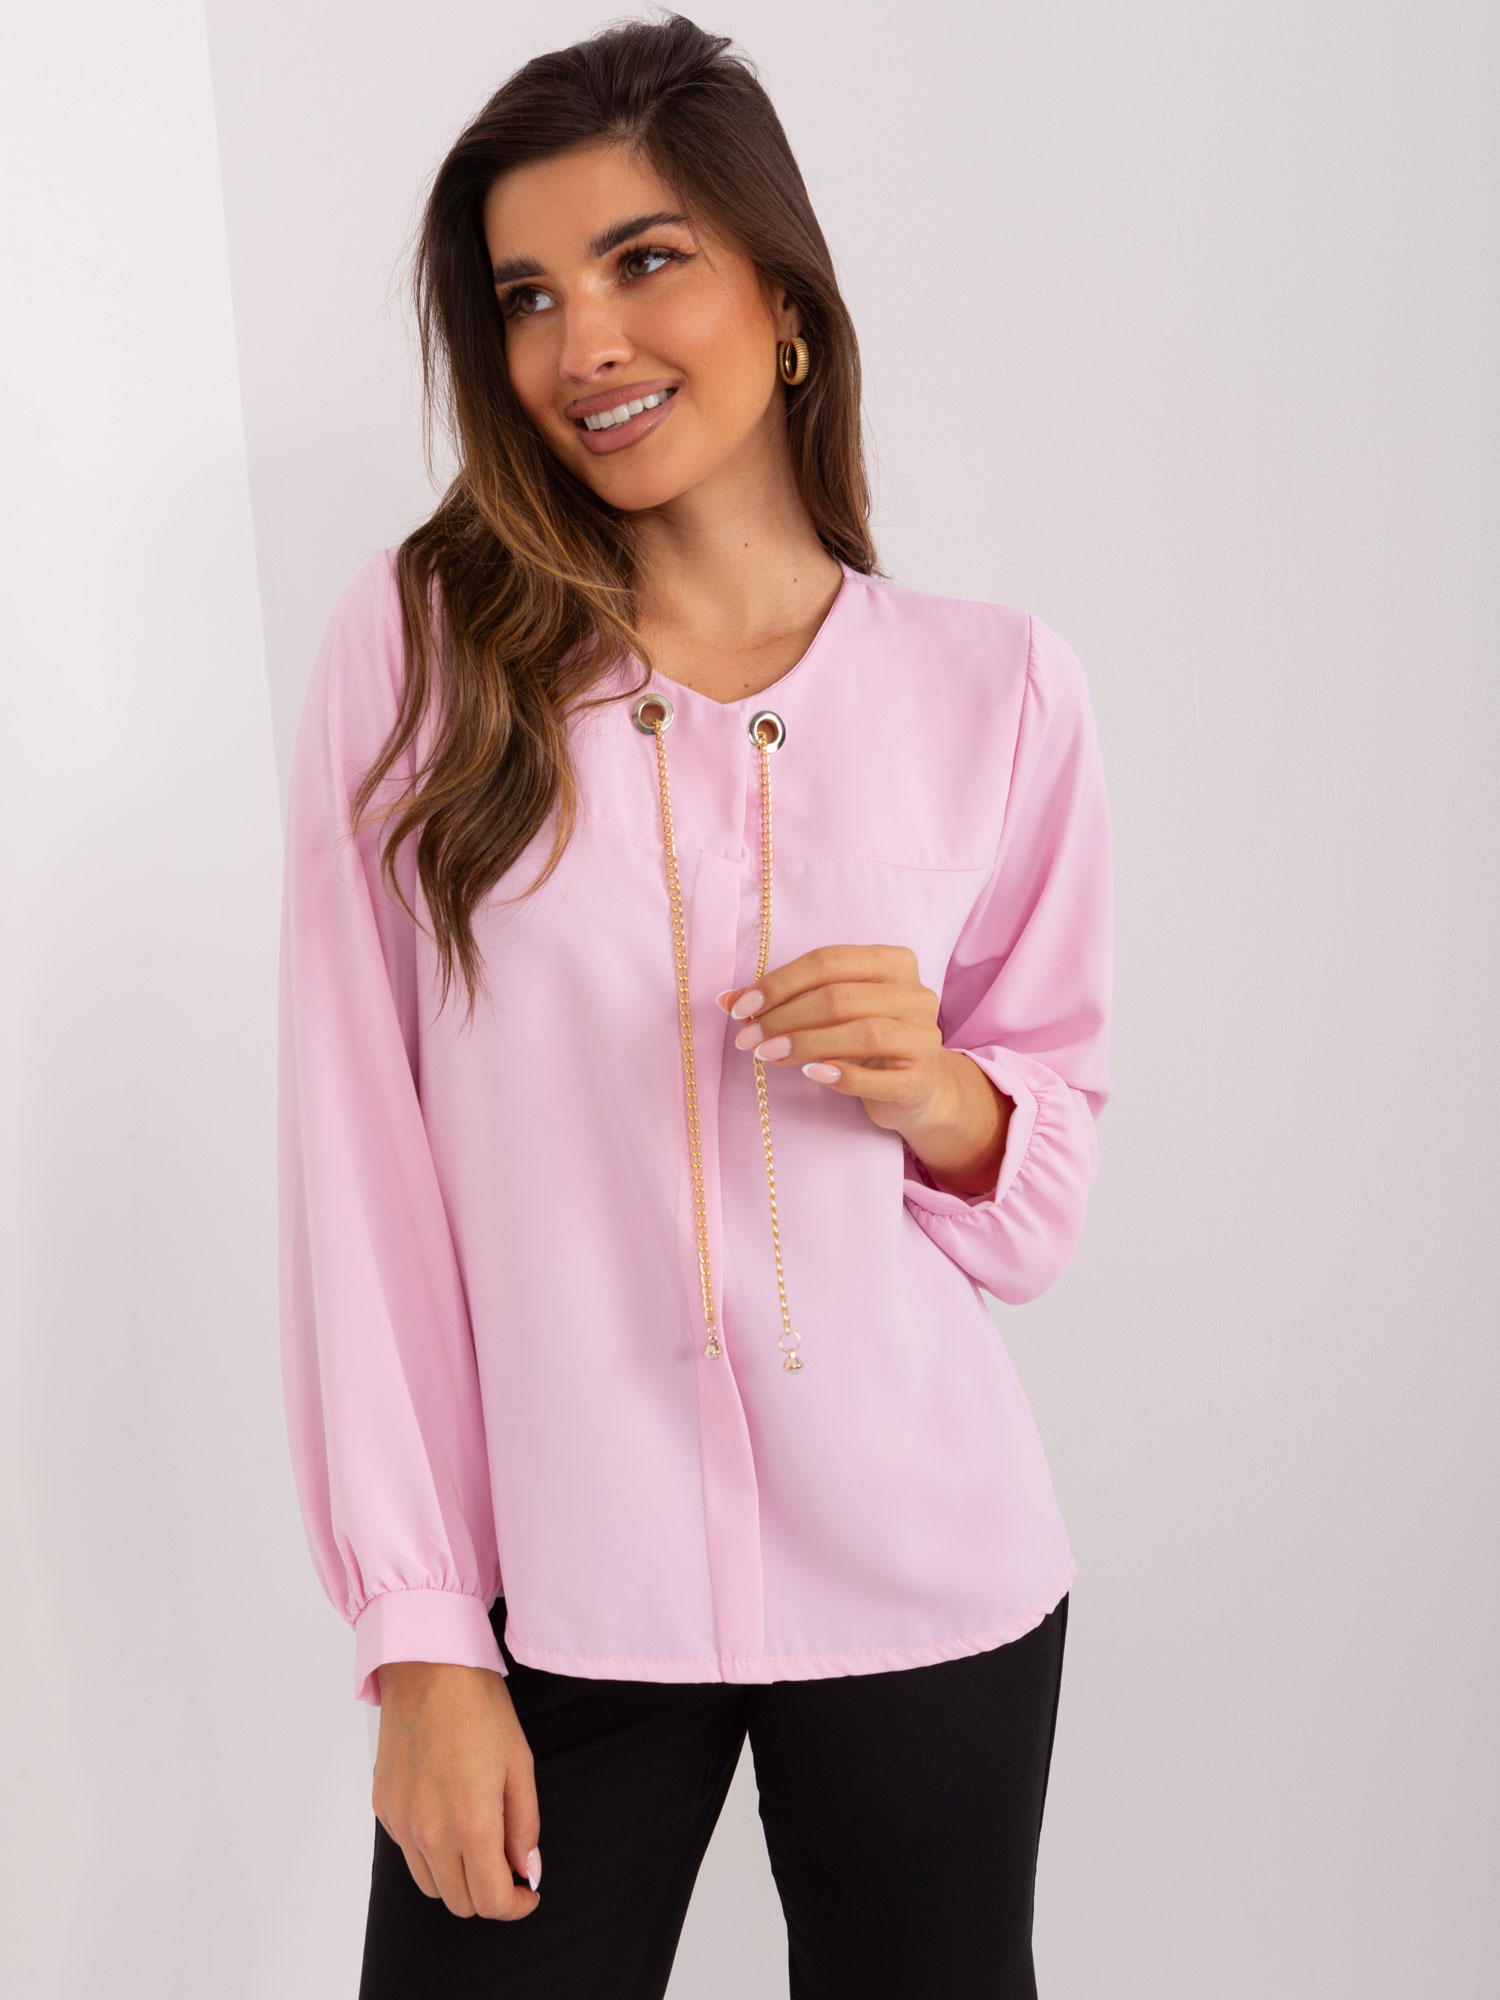 Light pink elegant formal blouse